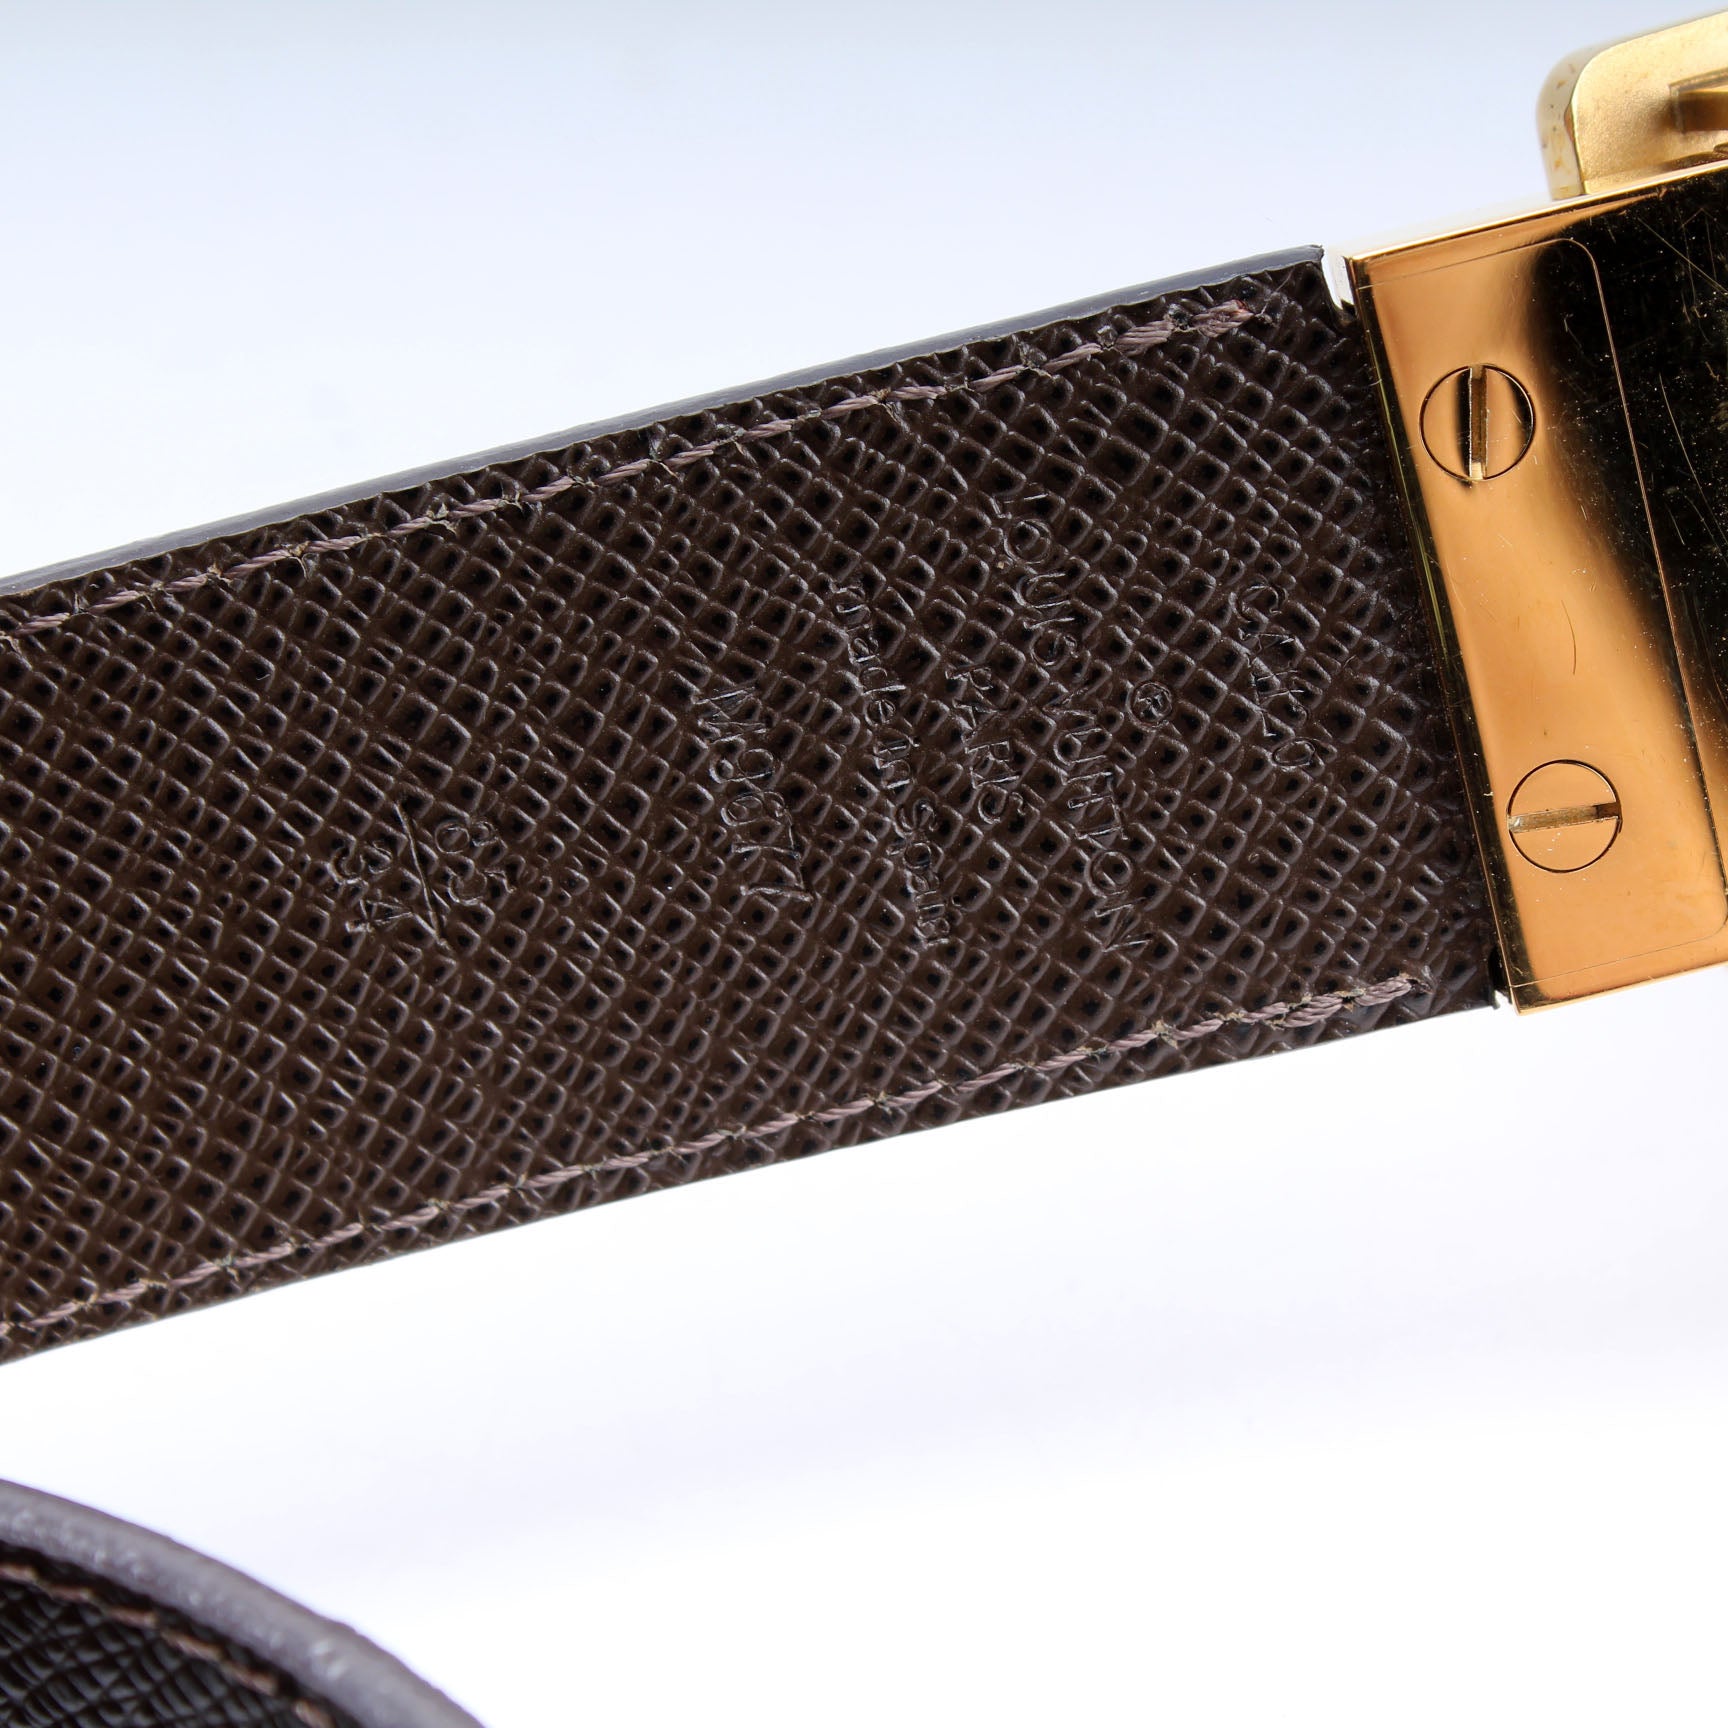 Louis Vuitton Vintage - Damier Ebene Inventeur Belt - Brown Gold